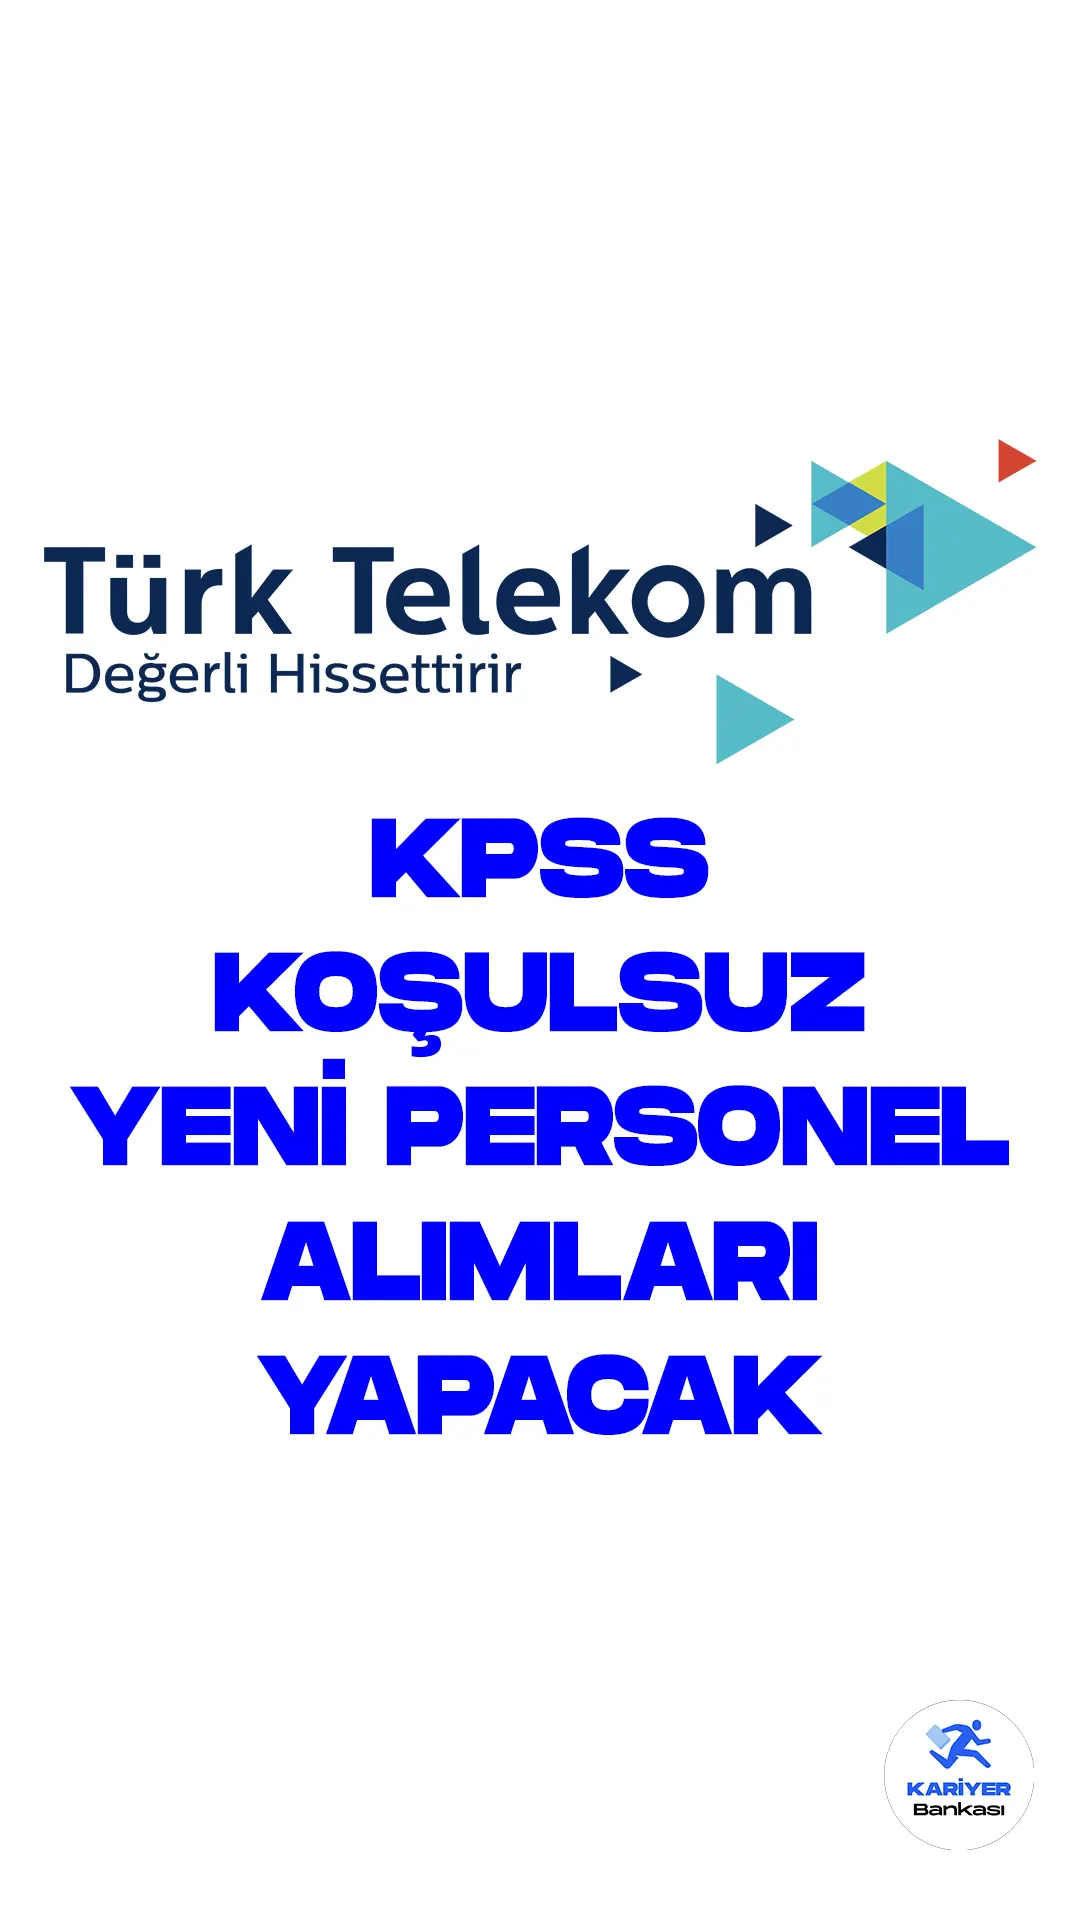 Türkiye'nin önde gelen iletişim şirketi Türk Telekom, yeni personel alımları yapmaya hazırlanıyor. Şirketin resmi kariyer sayfasında yayımlanan duyurulara göre, birçok farklı pozisyonda çalışacak personel alımı yapılacak.